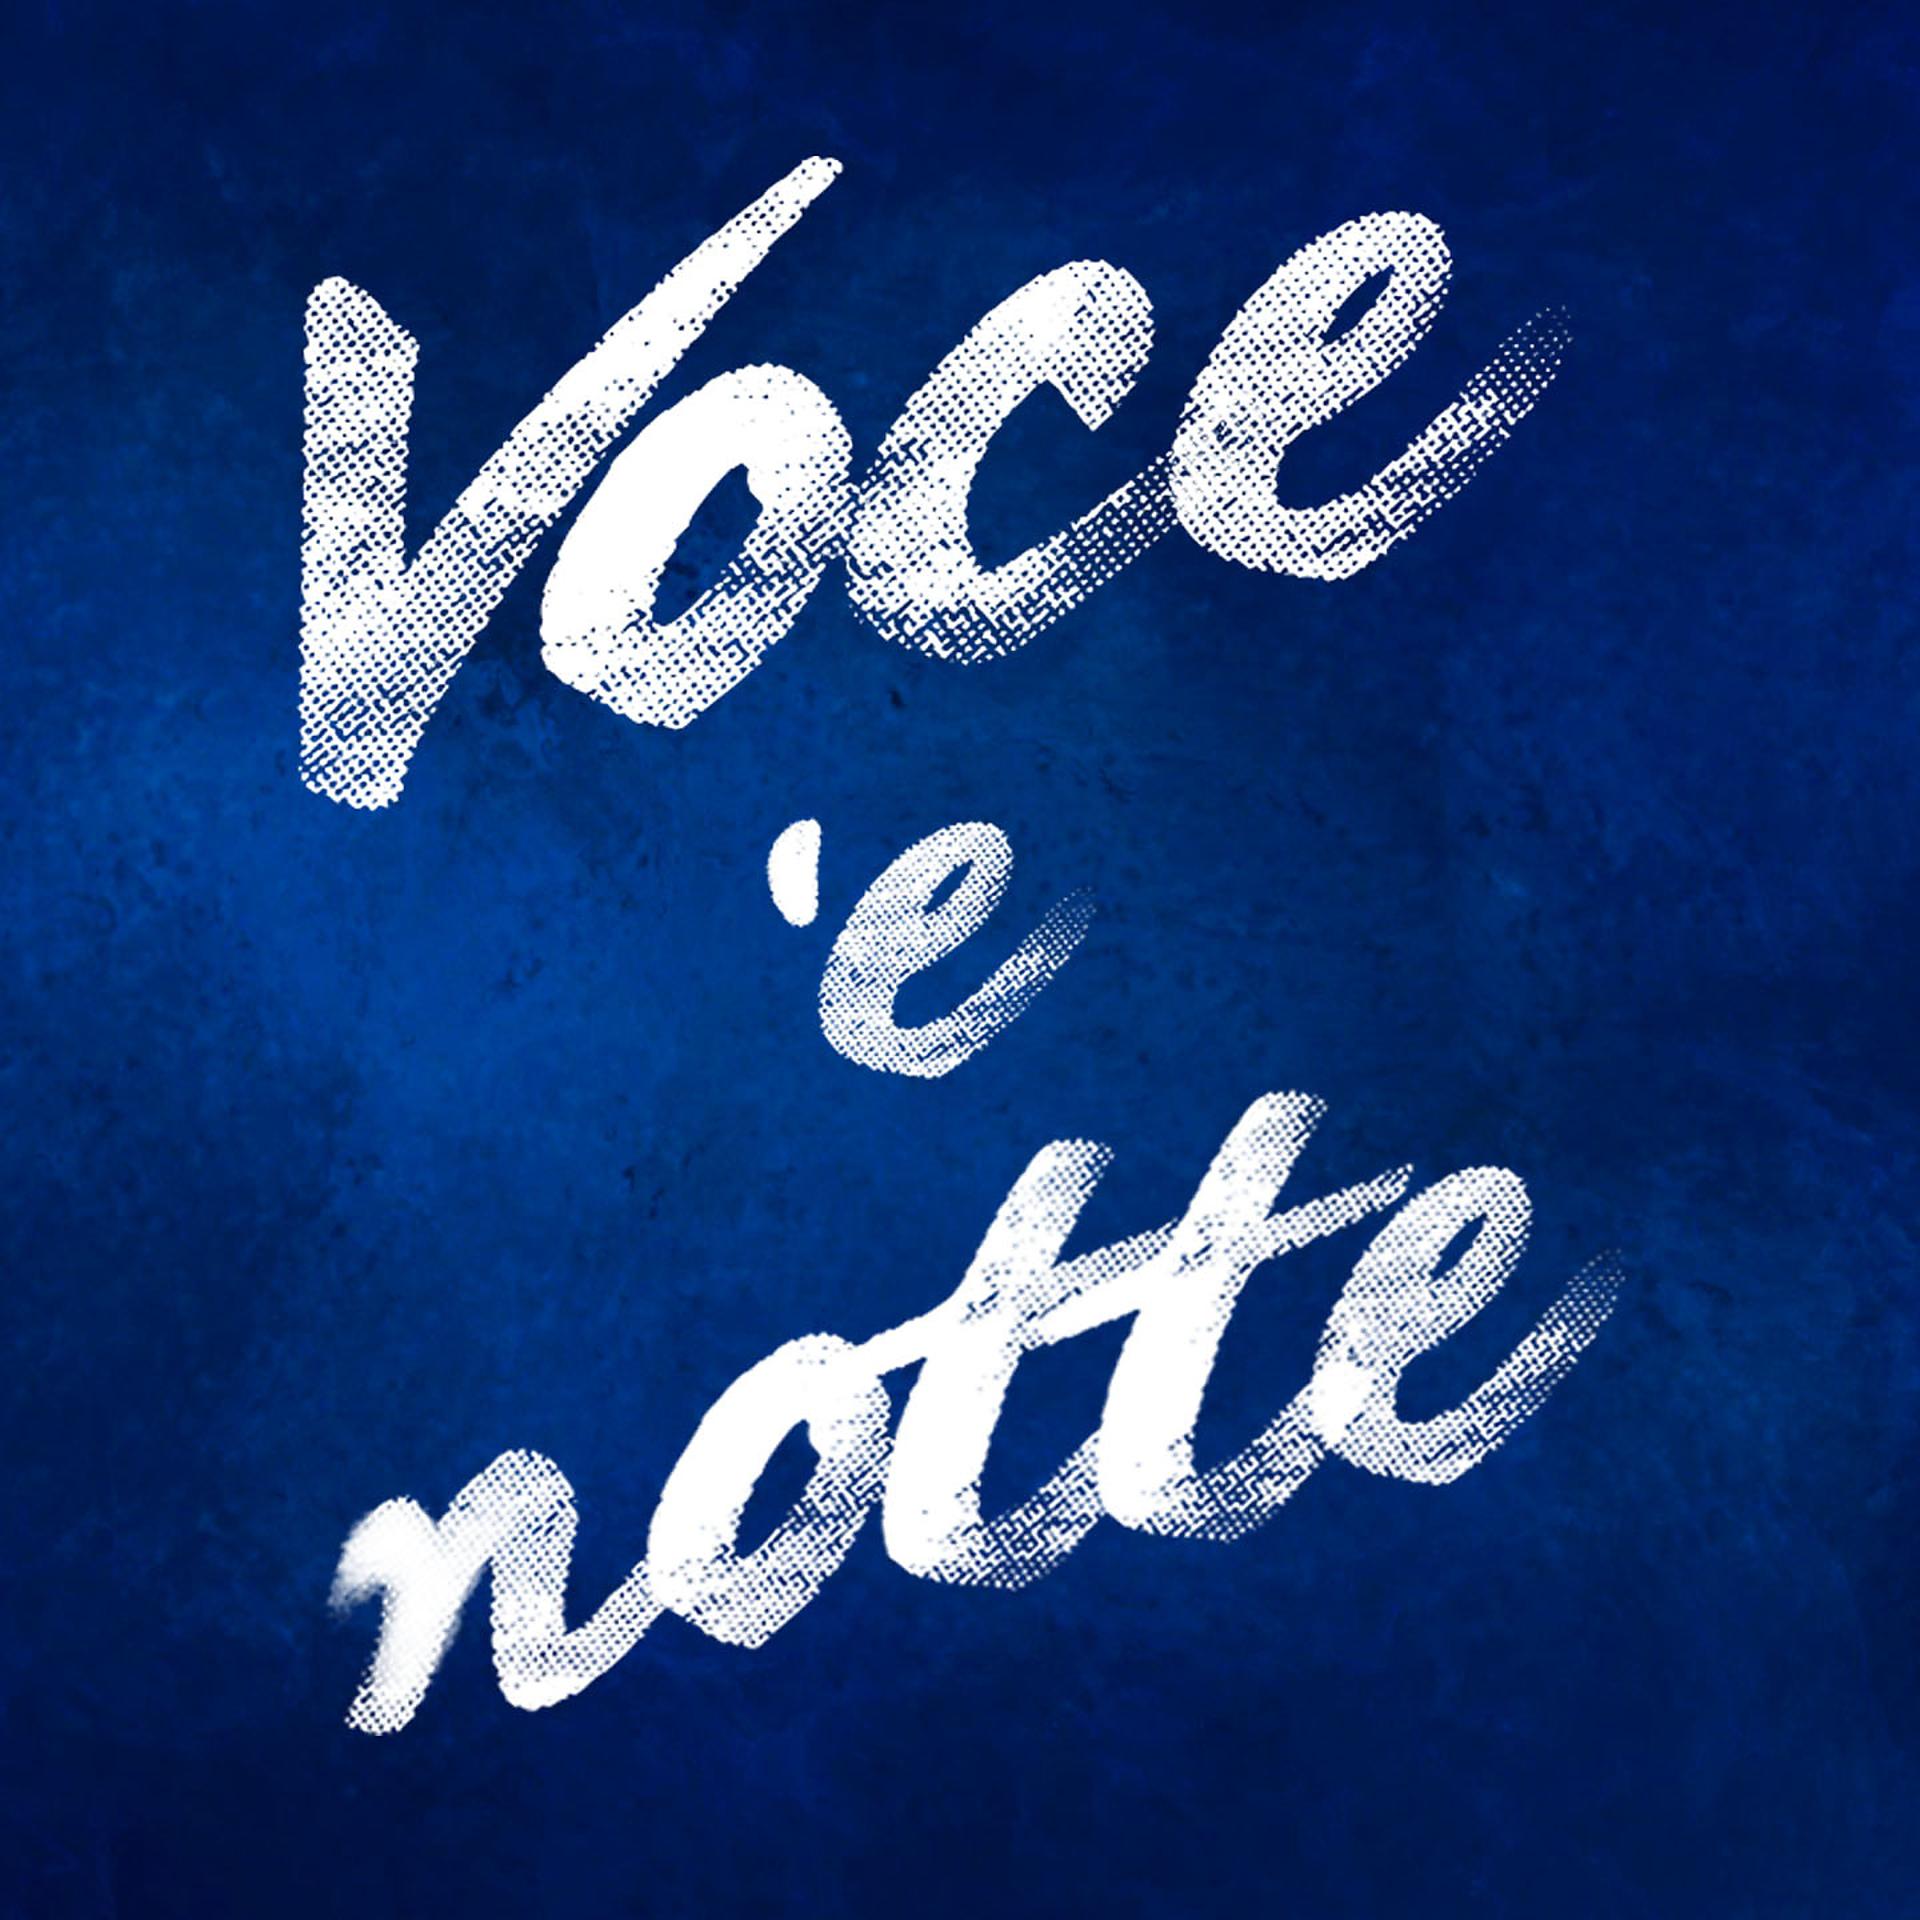 Постер альбома Voce 'e notte